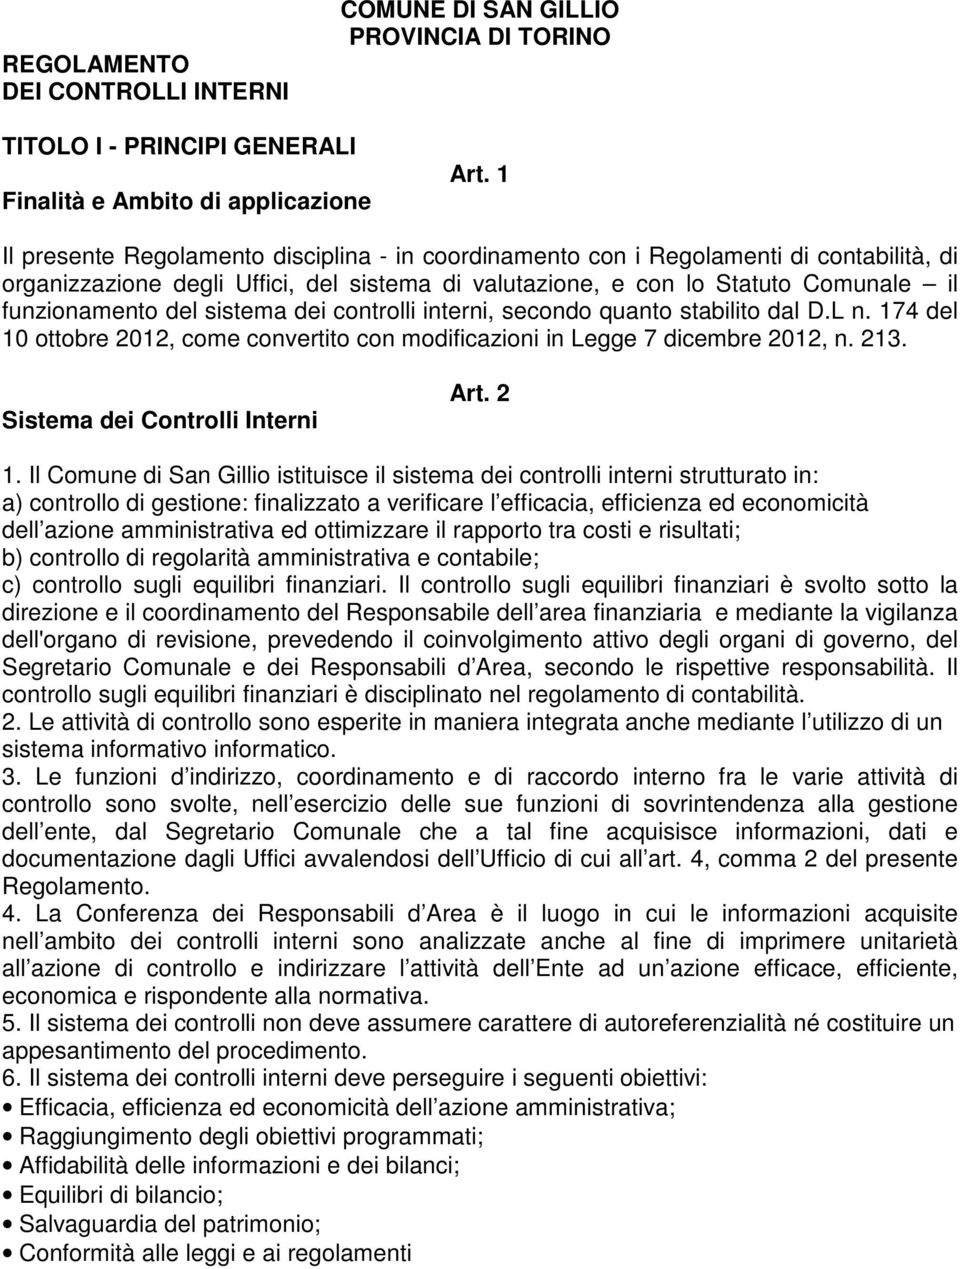 sistema dei controlli interni, secondo quanto stabilito dal D.L n. 174 del 10 ottobre 2012, come convertito con modificazioni in Legge 7 dicembre 2012, n. 213. Sistema dei Controlli Interni Art. 2 1.